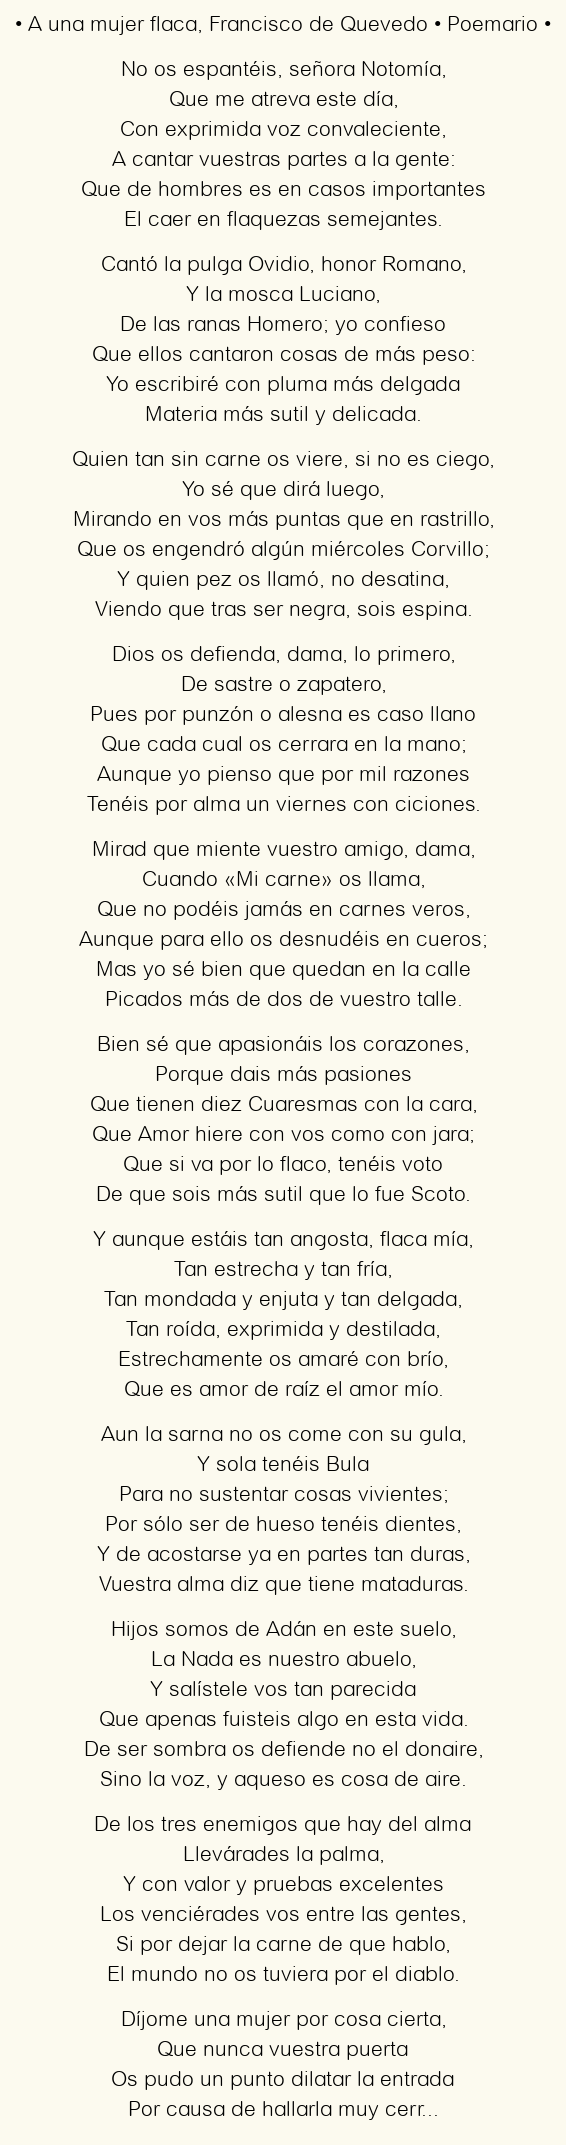 Imagen con el poema A una mujer flaca, por Francisco de Quevedo